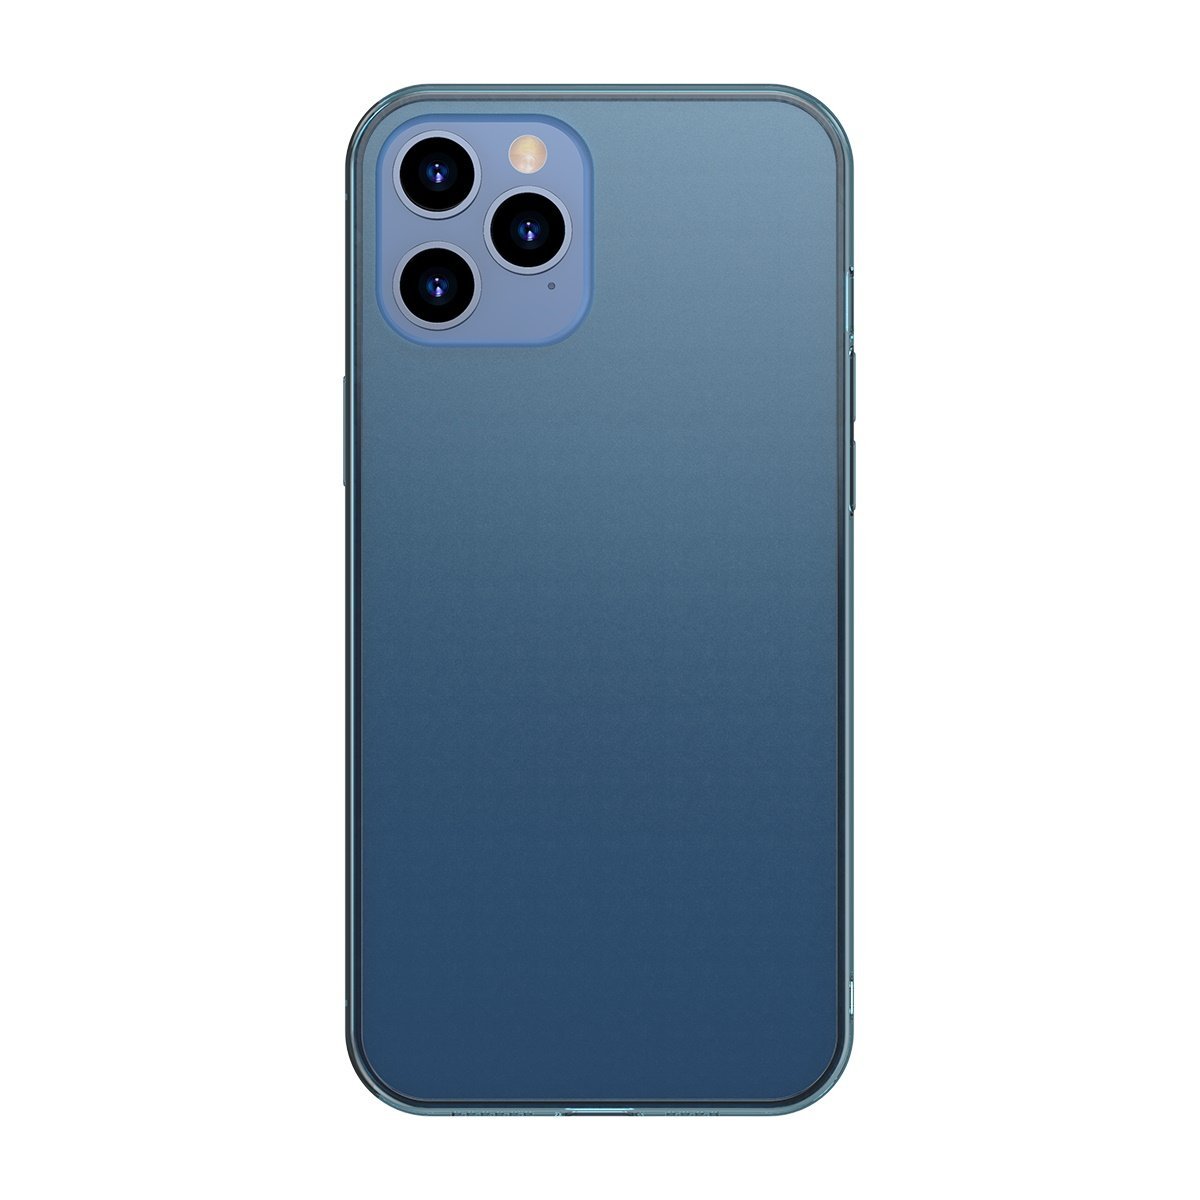 Husa pentru Apple iPhone 12 Pro Max, Baseus Protective Case, Albastru, 6.7 inch BASEUS imagine noua idaho.ro